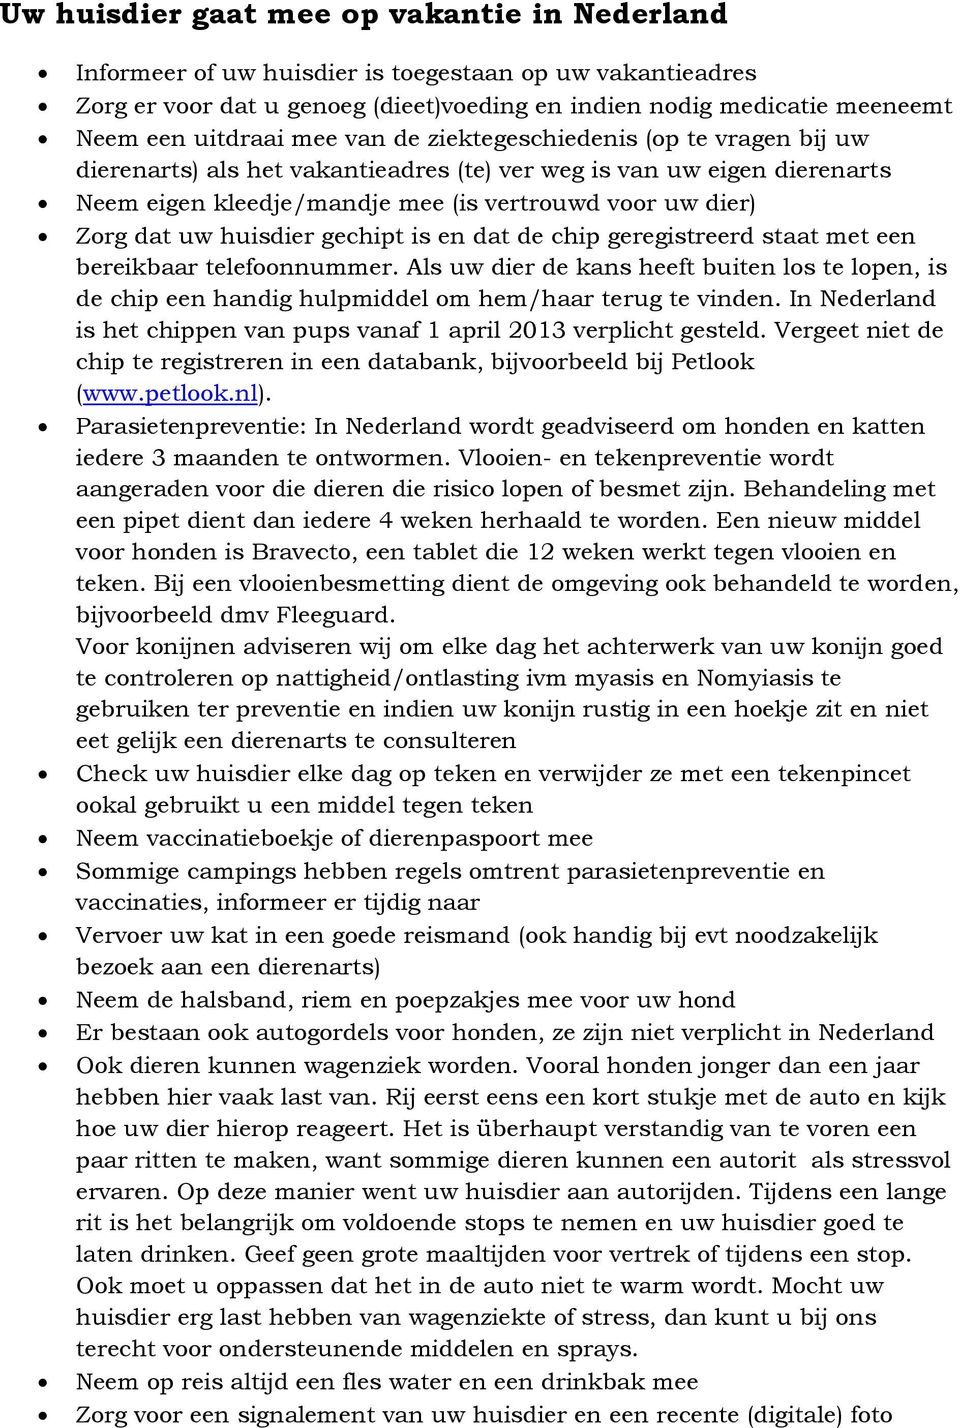 In Nederland is het chippen van pups vanaf 1 april 2013 verplicht gesteld. Vergeet niet de chip te registreren in een databank, bijvoorbeeld bij Petlook (www.petlook.nl).